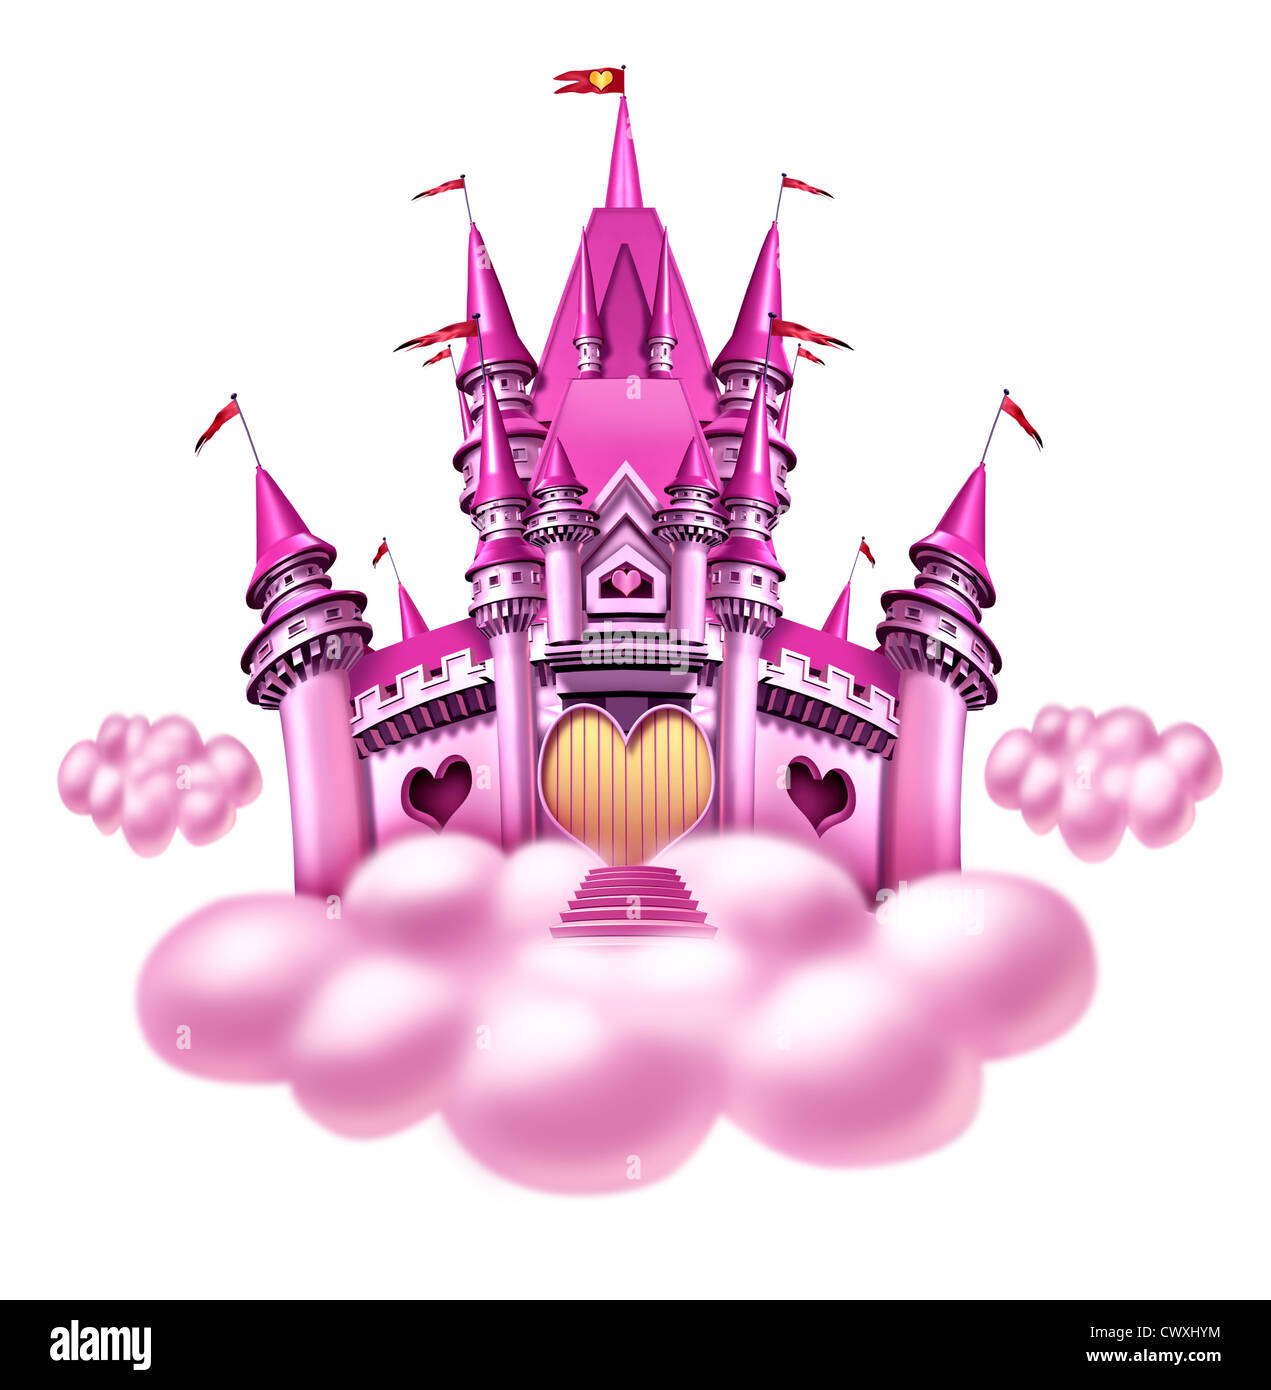 Fantasy princess castillo nube con un divertido rosa reino mágico flotando sobre una mullida nube como un juguete de niñas o soñar el sueño de un cuento de hadas de la nobleza con formas de corazón y la magia y elegancia. Foto de stock